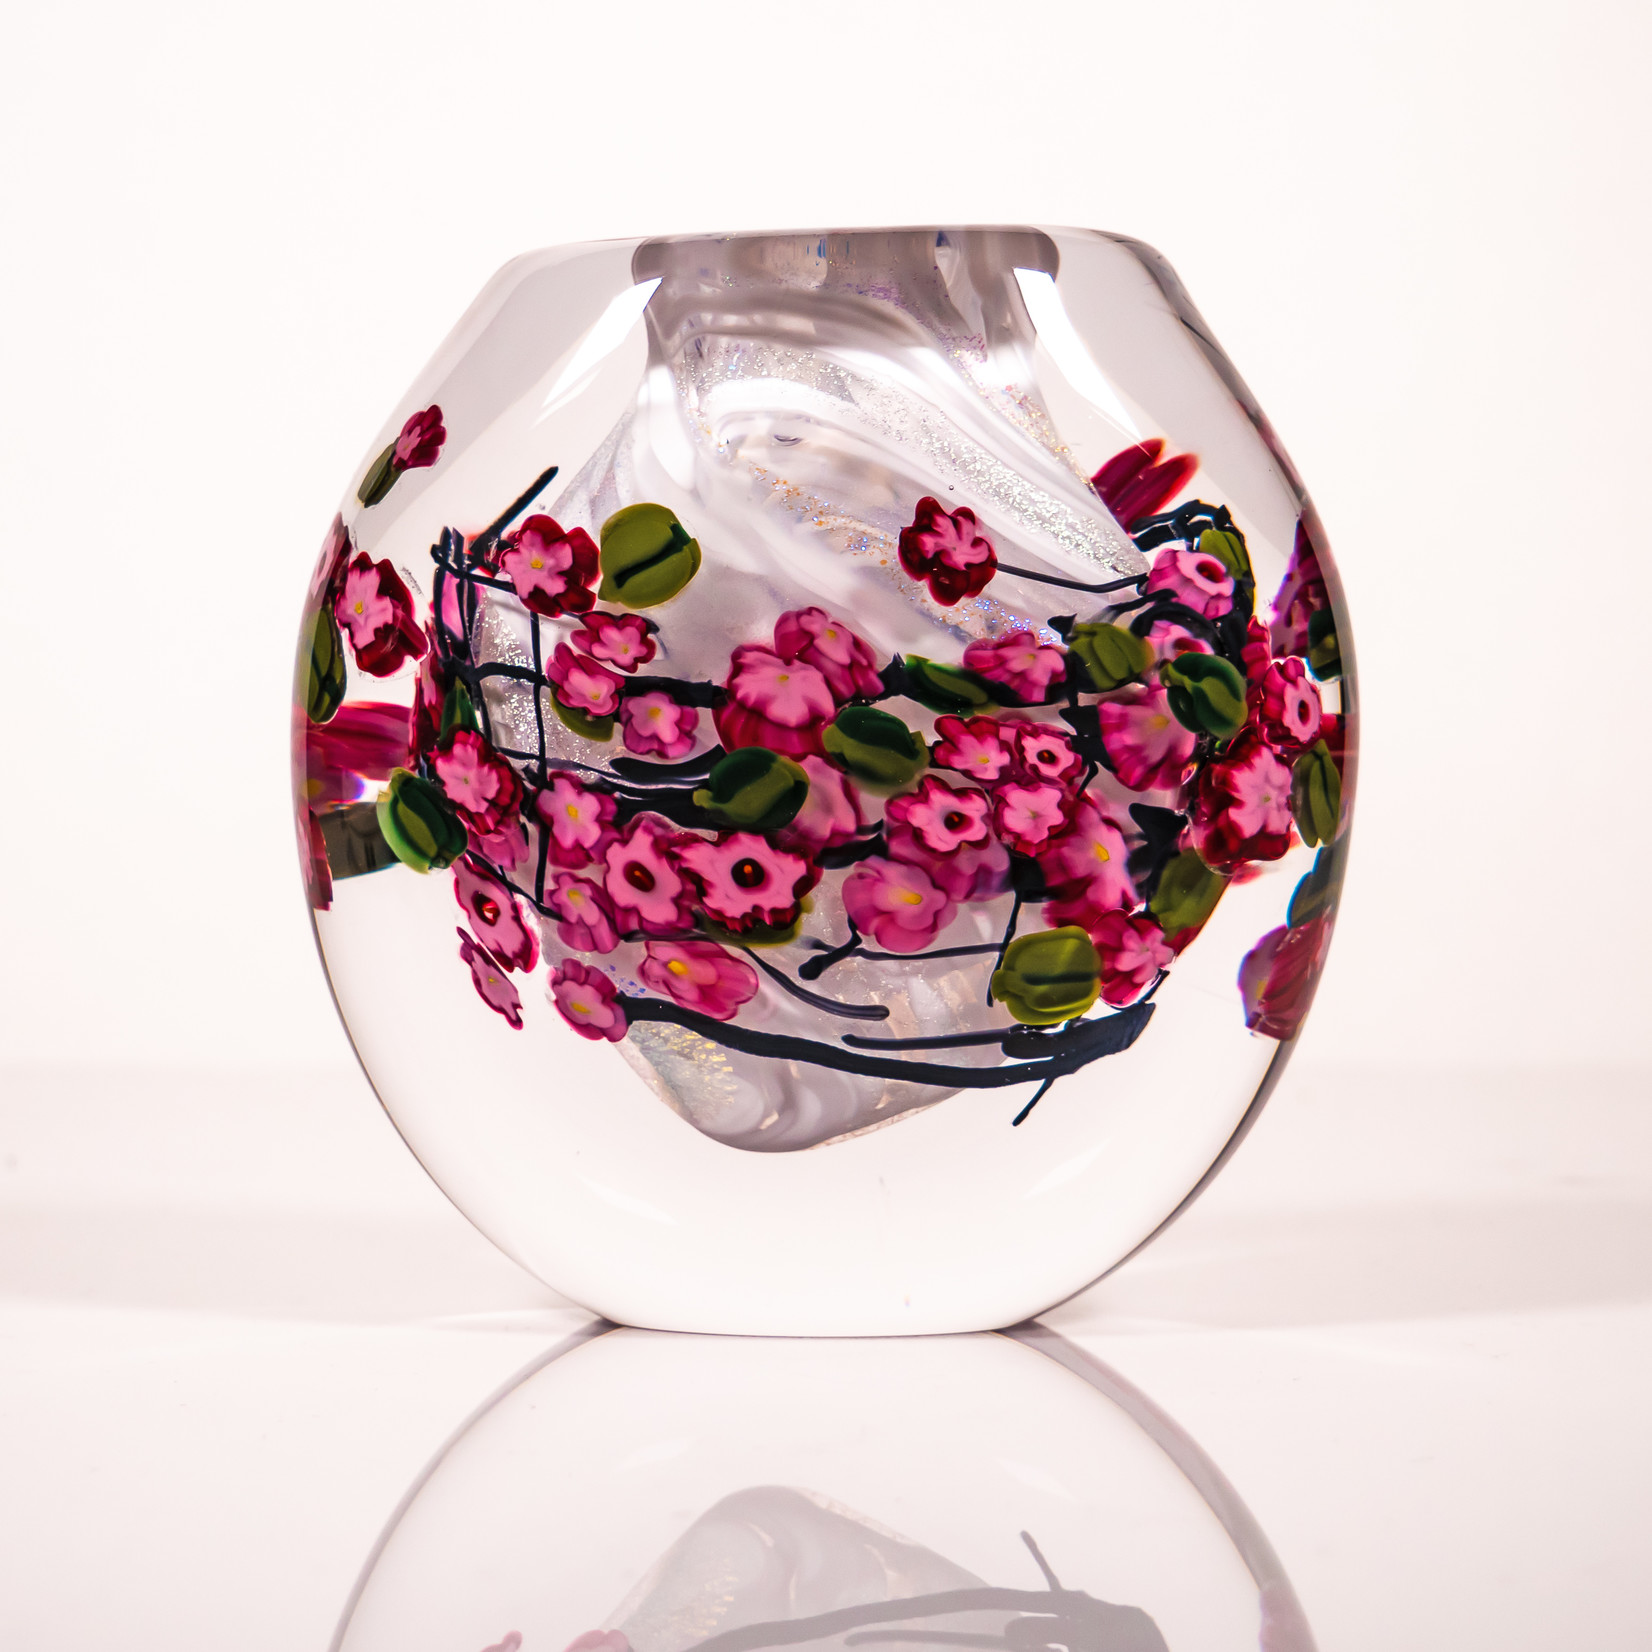 Shawn Messenger Shawn Messenger: Garden Series Cased Vase